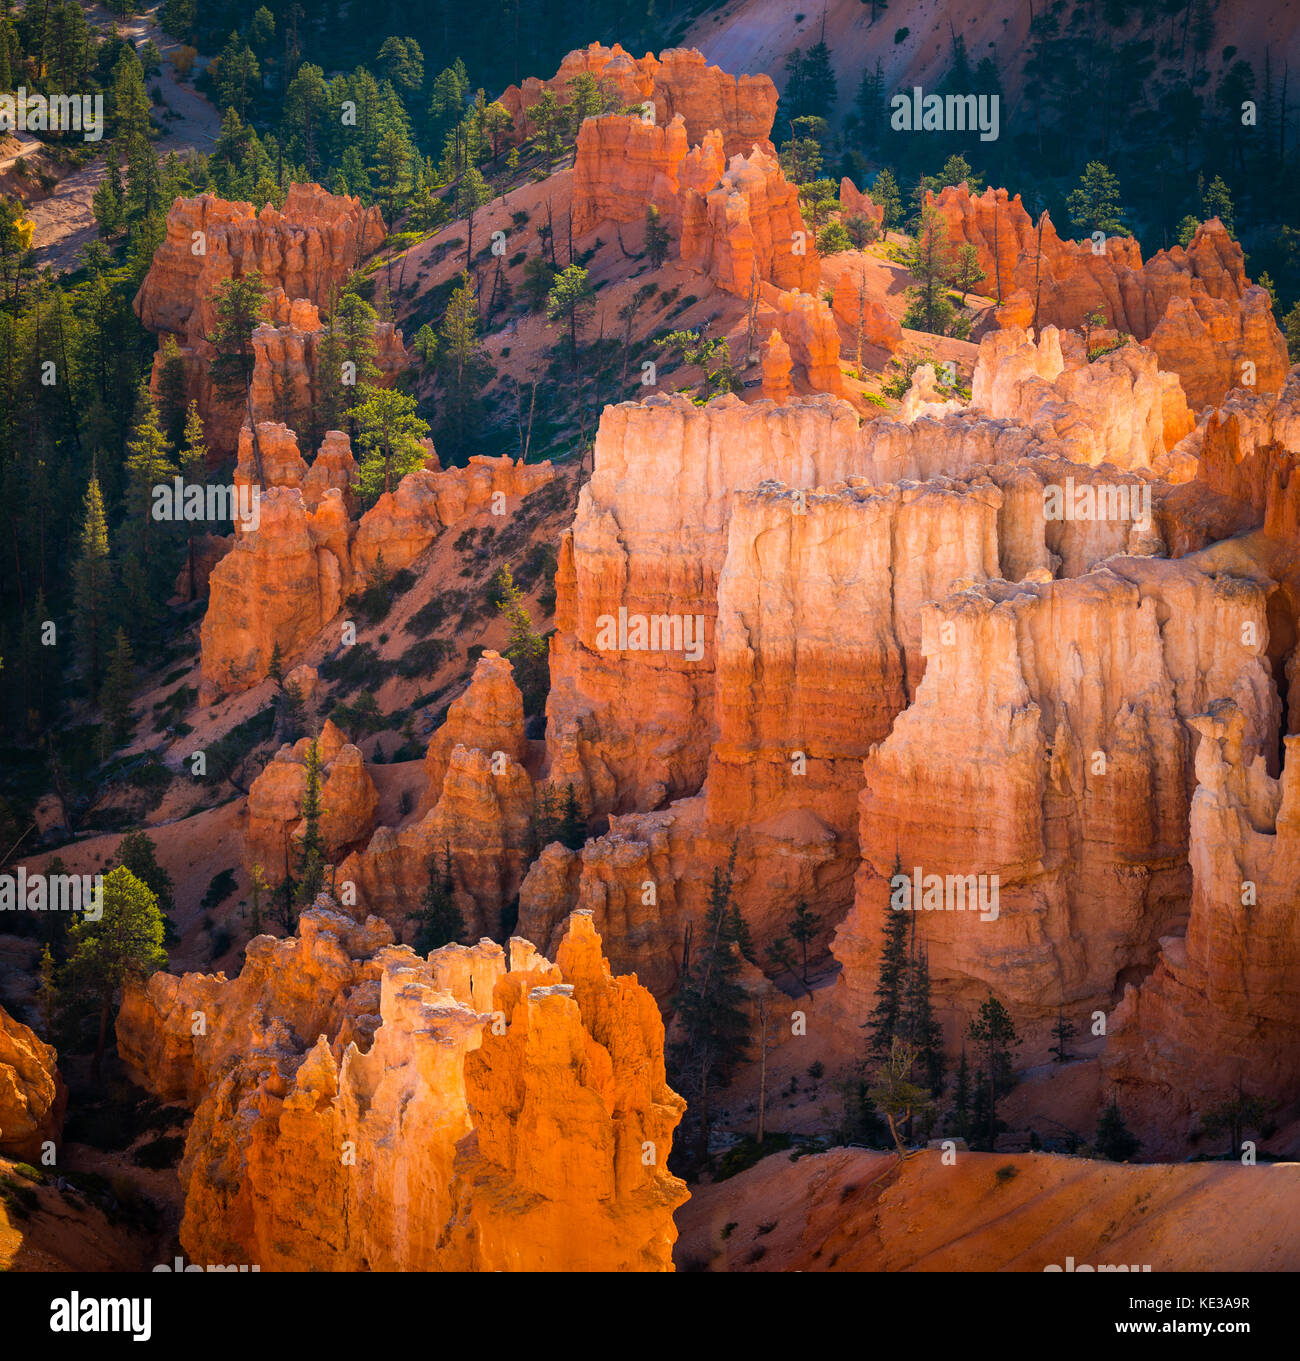 Bryce Canyon National Park, eine weitläufige finden im südlichen Utah, ist für Crimson bekannt - farbige Hoodoos, die spire-geformten Felsen. Die pa Stockfoto